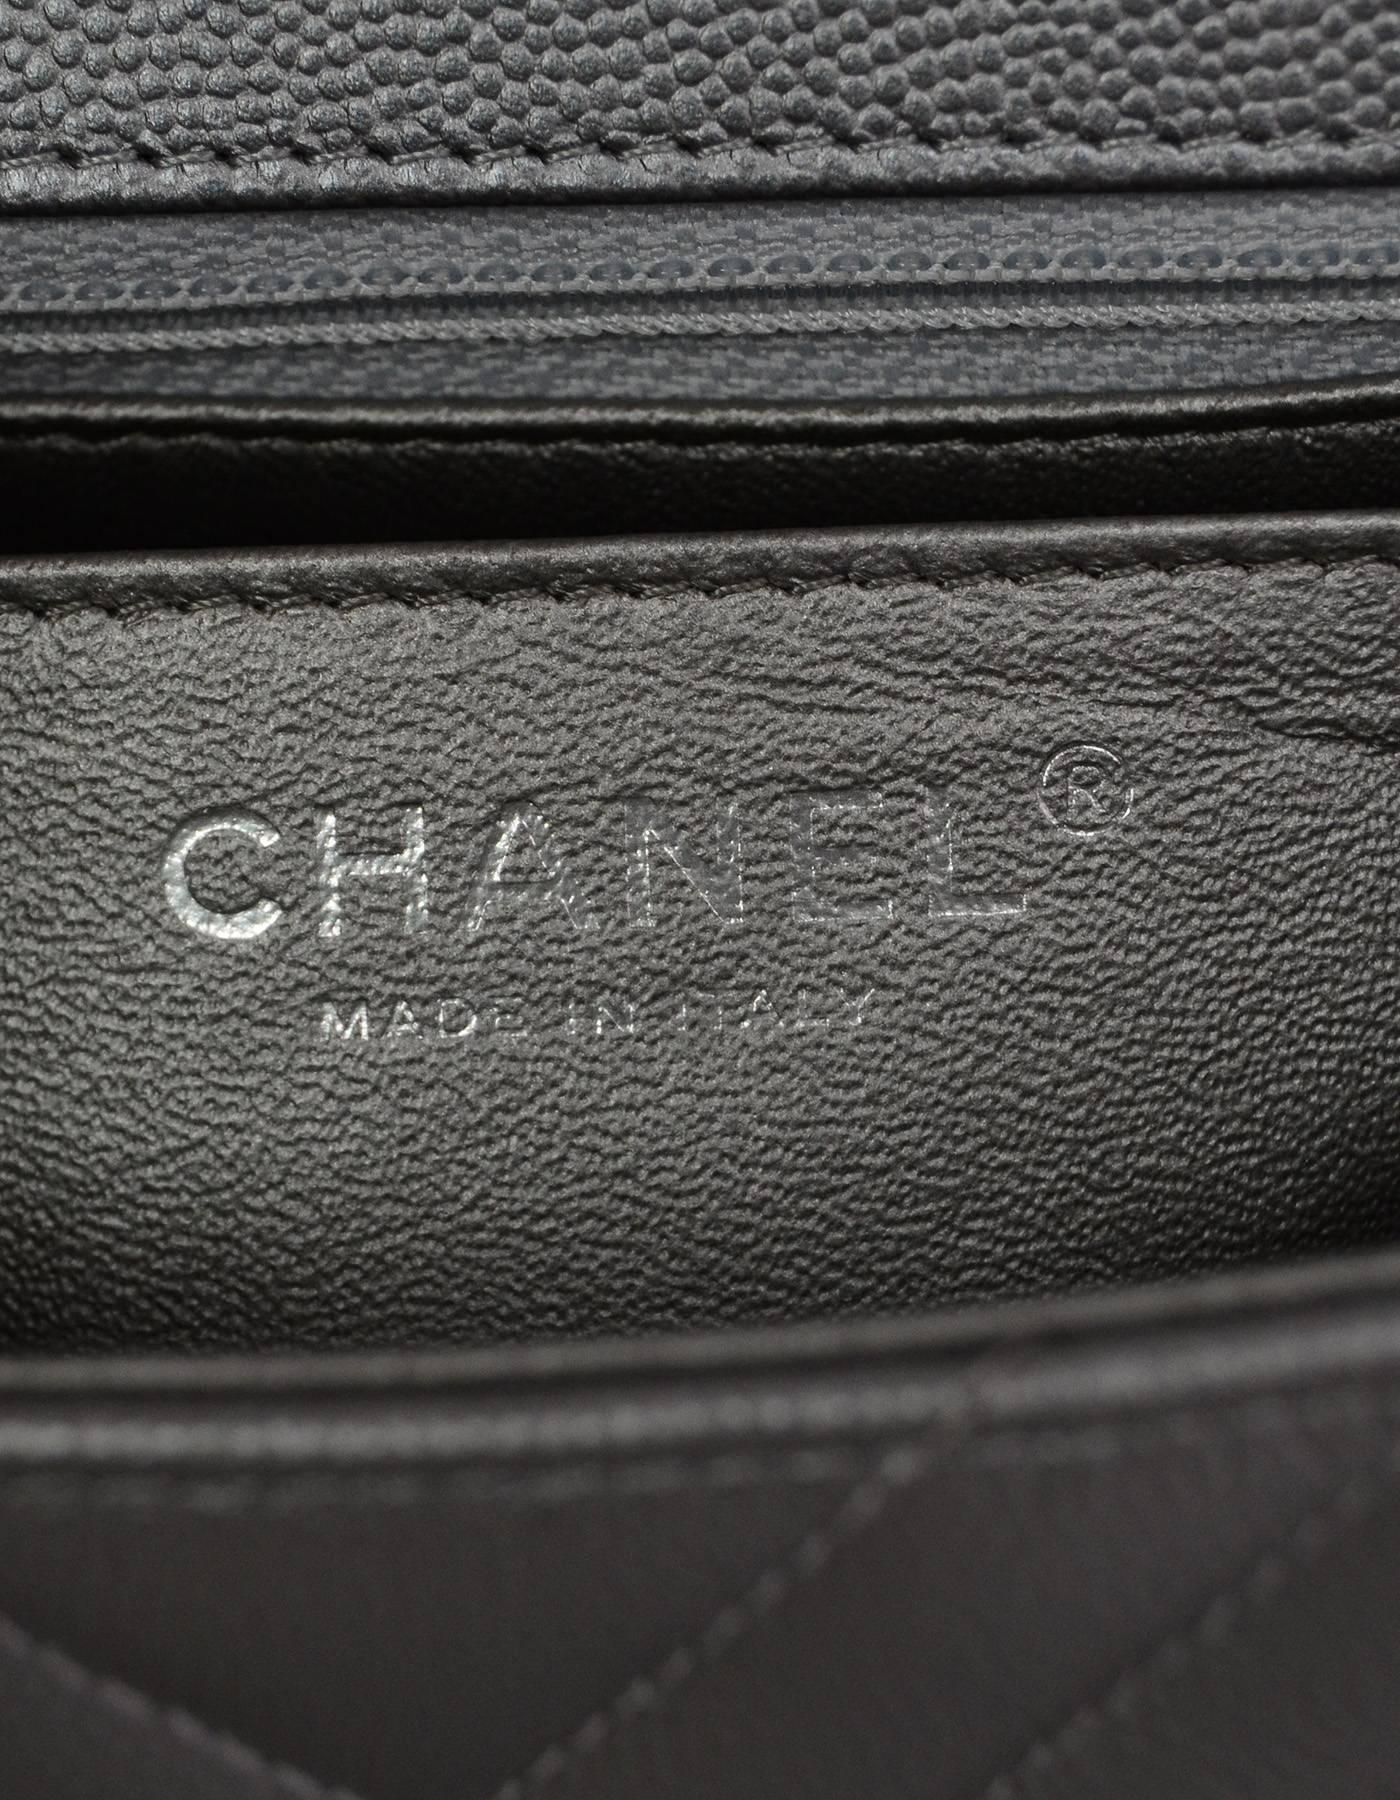 Women's Chanel NEW 2016 Silver Caviar Leather Chevron Square Mini Flap Bag w/ Receipt